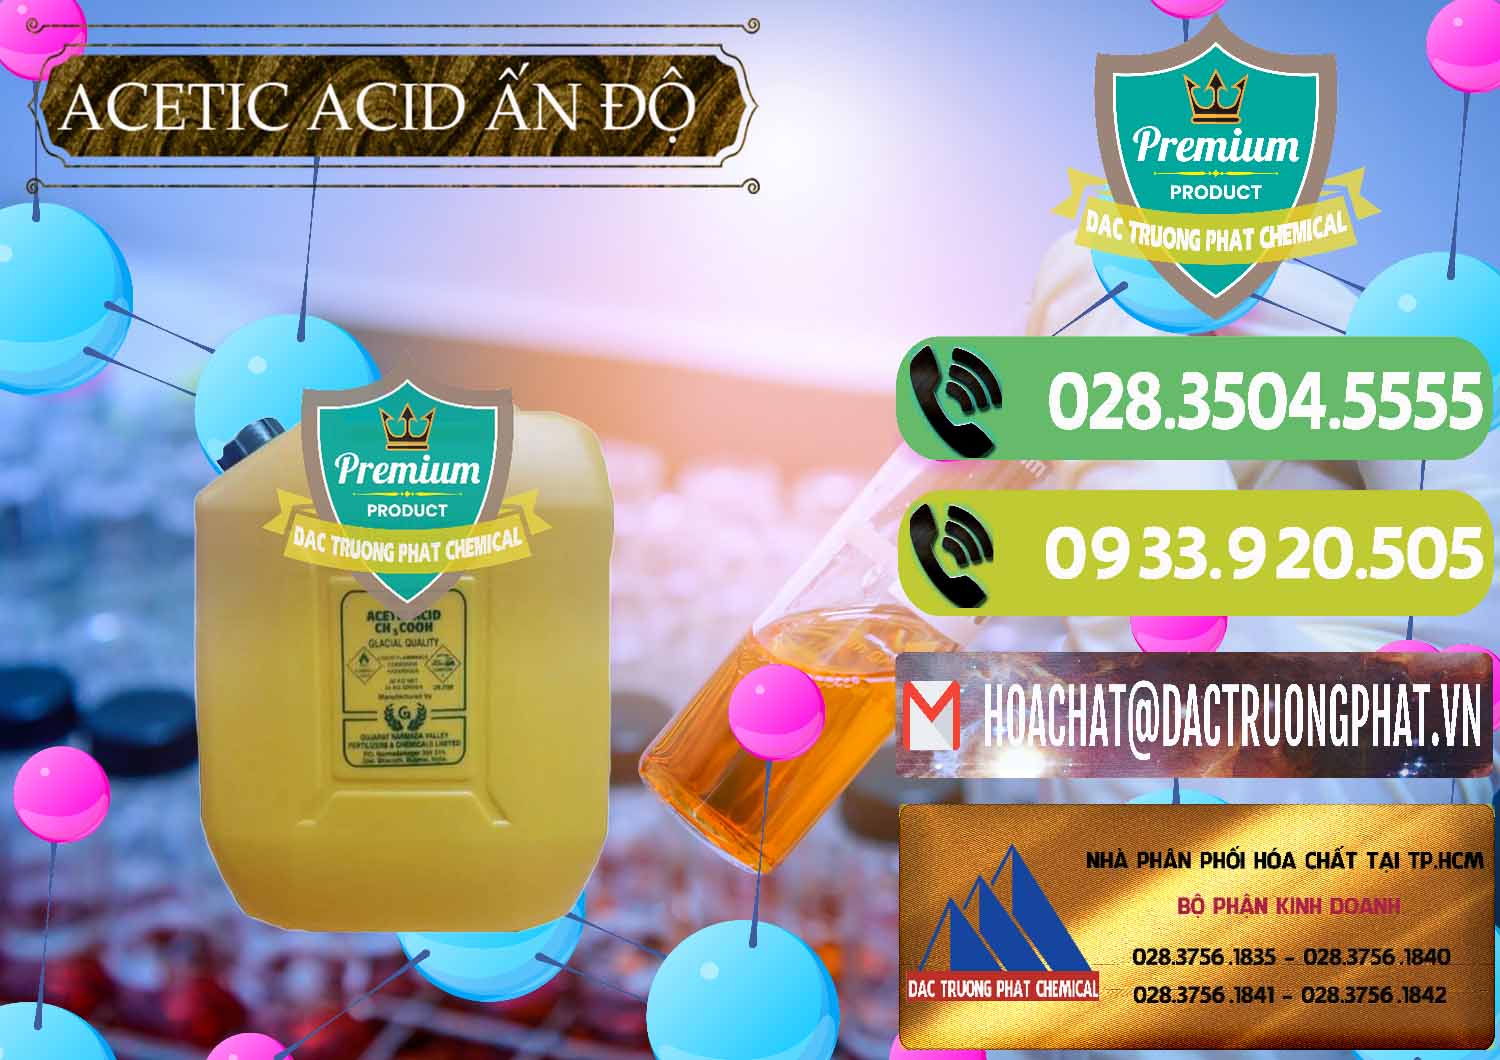 Nơi bán ( cung cấp ) Acetic Acid – Axit Acetic Ấn Độ India - 0359 - Cty chuyên cung cấp _ nhập khẩu hóa chất tại TP.HCM - hoachatmientay.vn